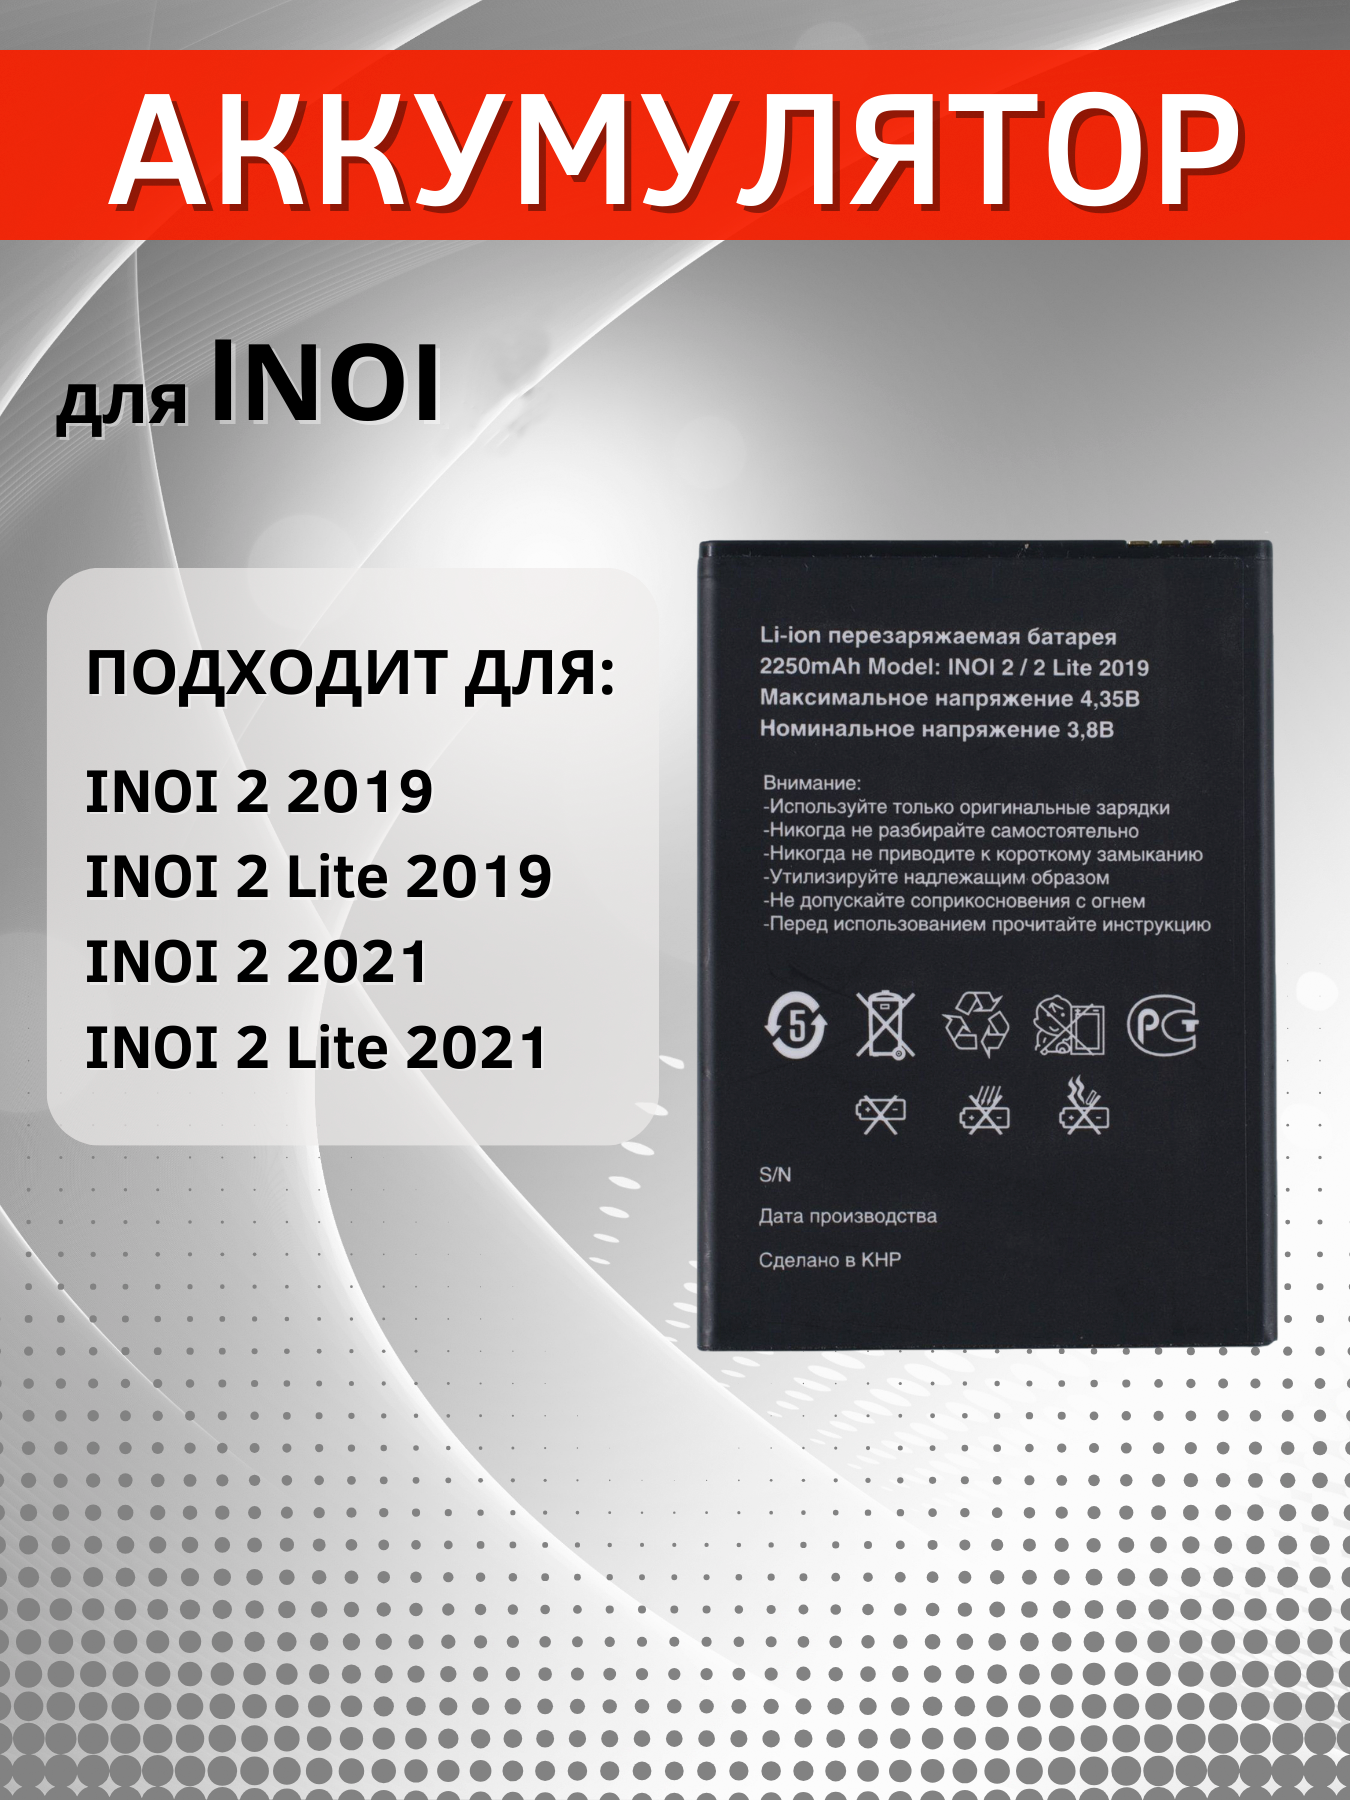 Аккумулятор / батарея для INOI 2 2019, INOI 2 Lite 2019, INOI 2 2021, INOI 2 Lite 2021